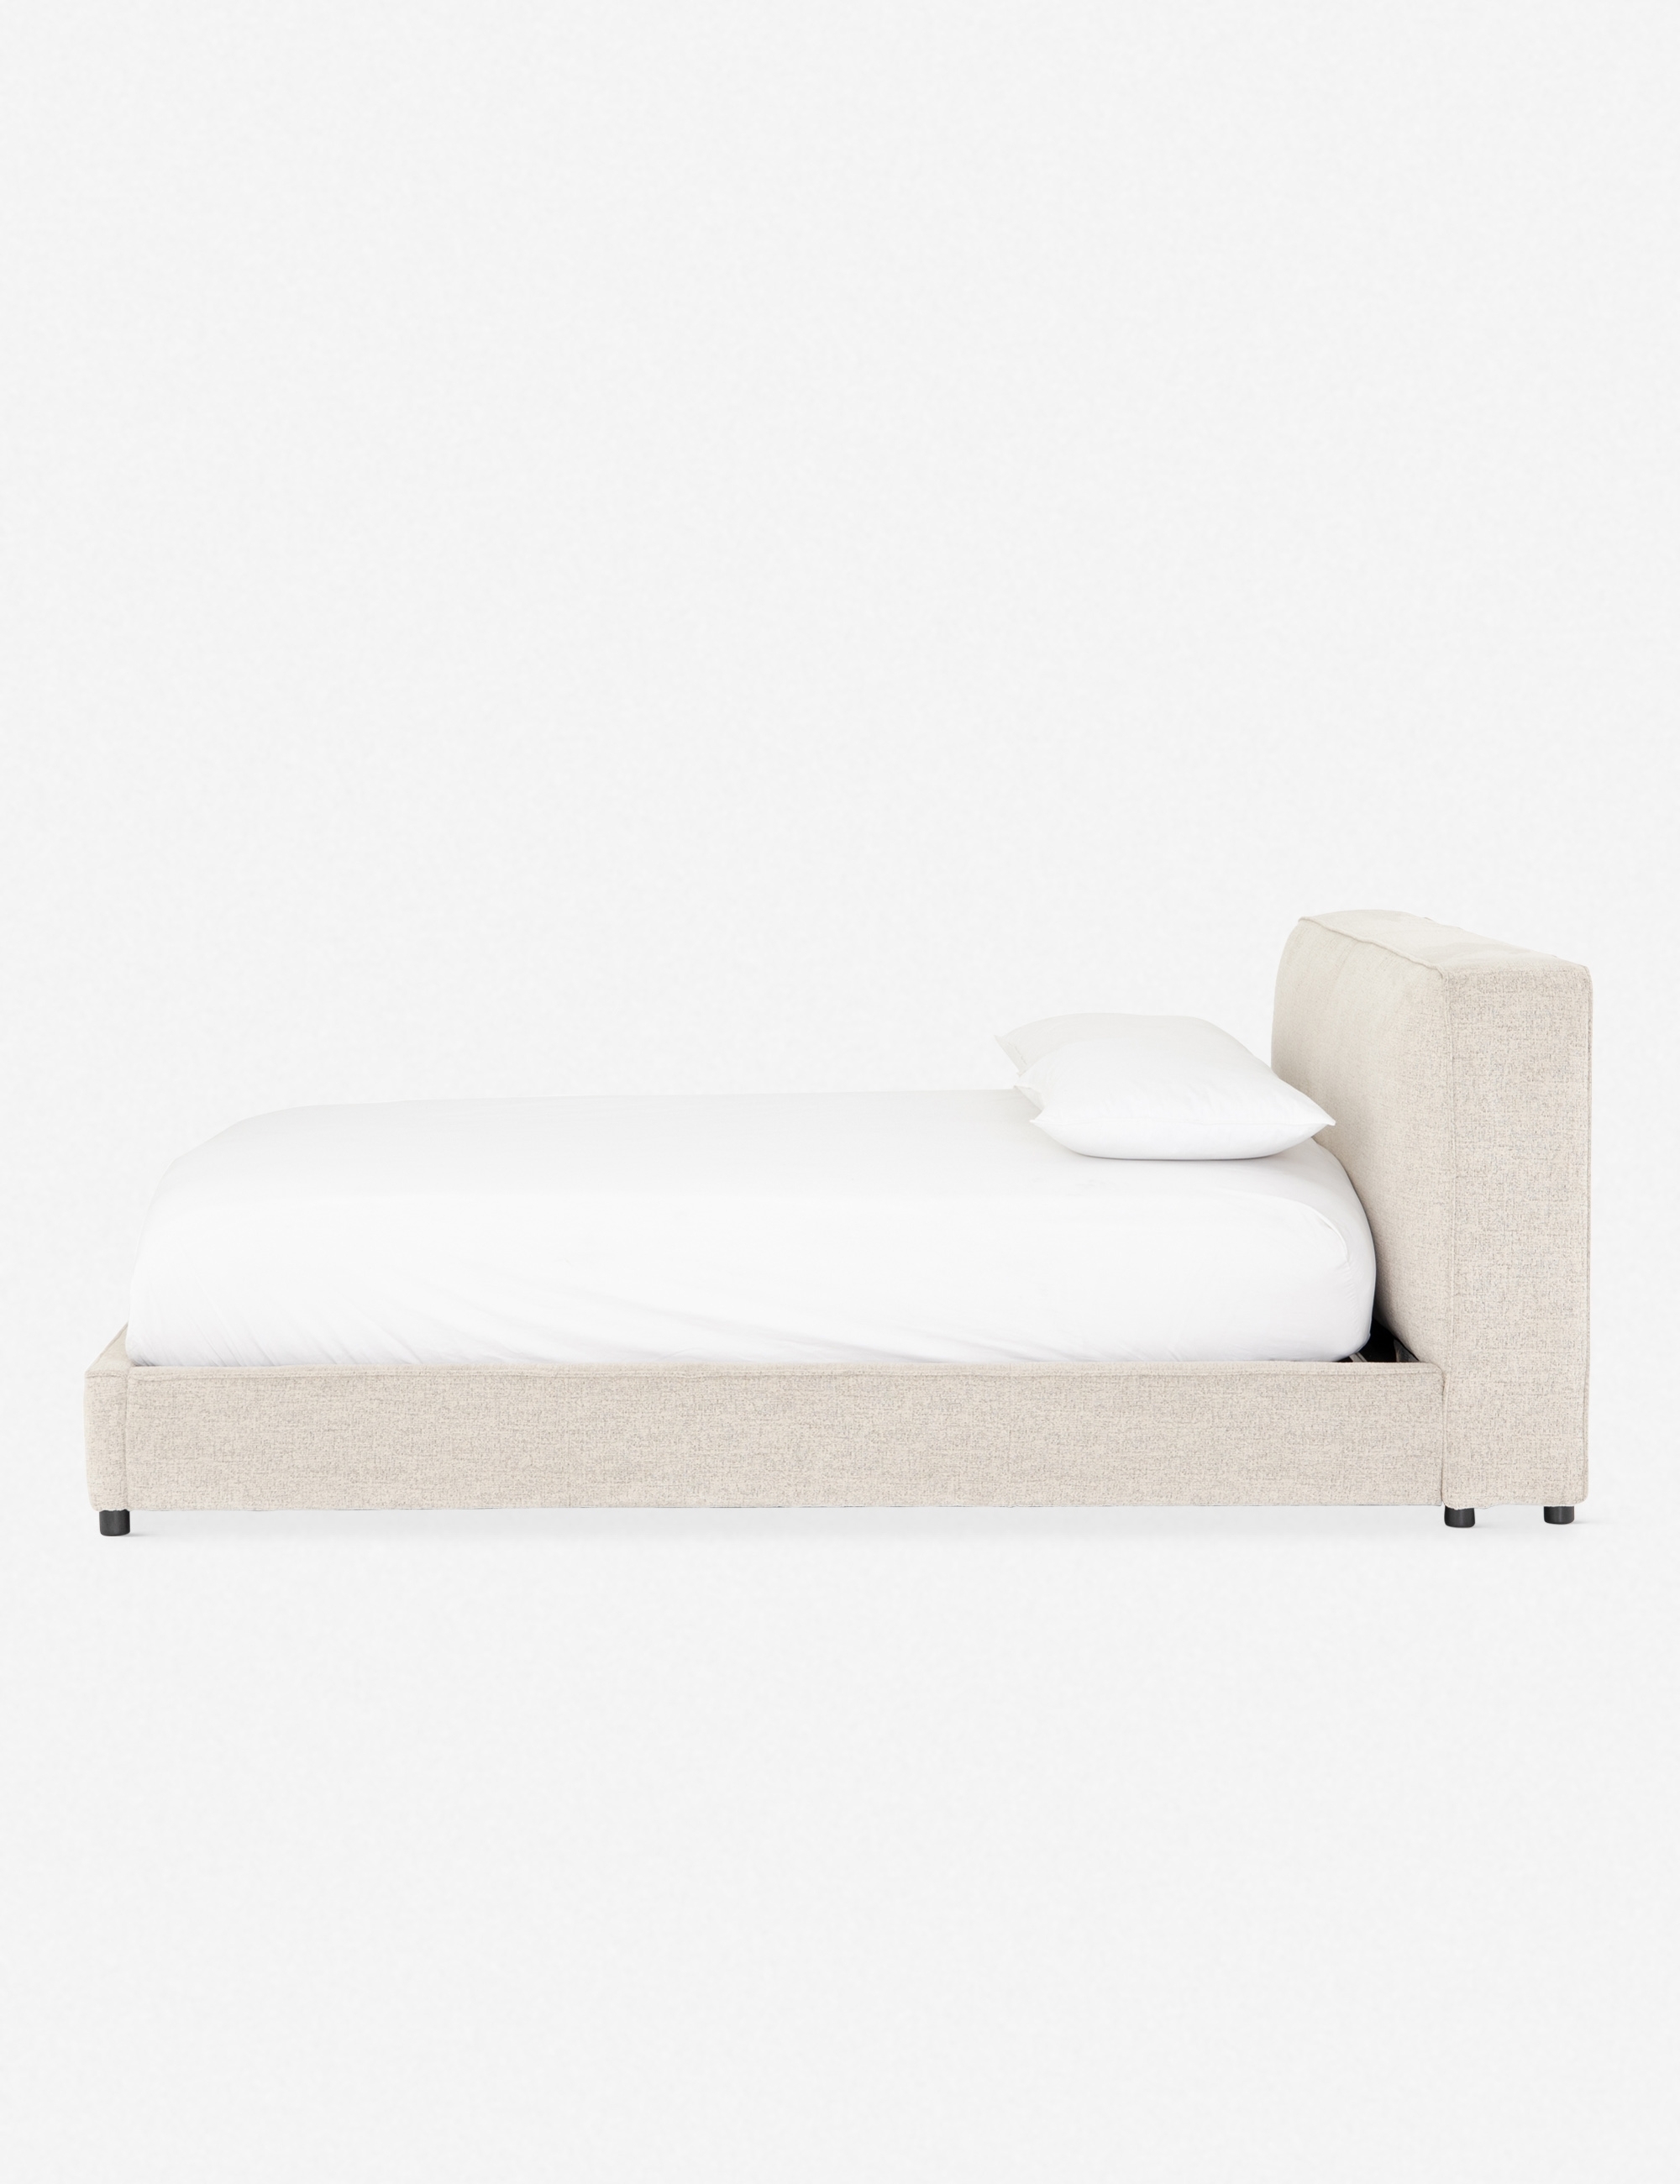 Clario Bed - Image 1